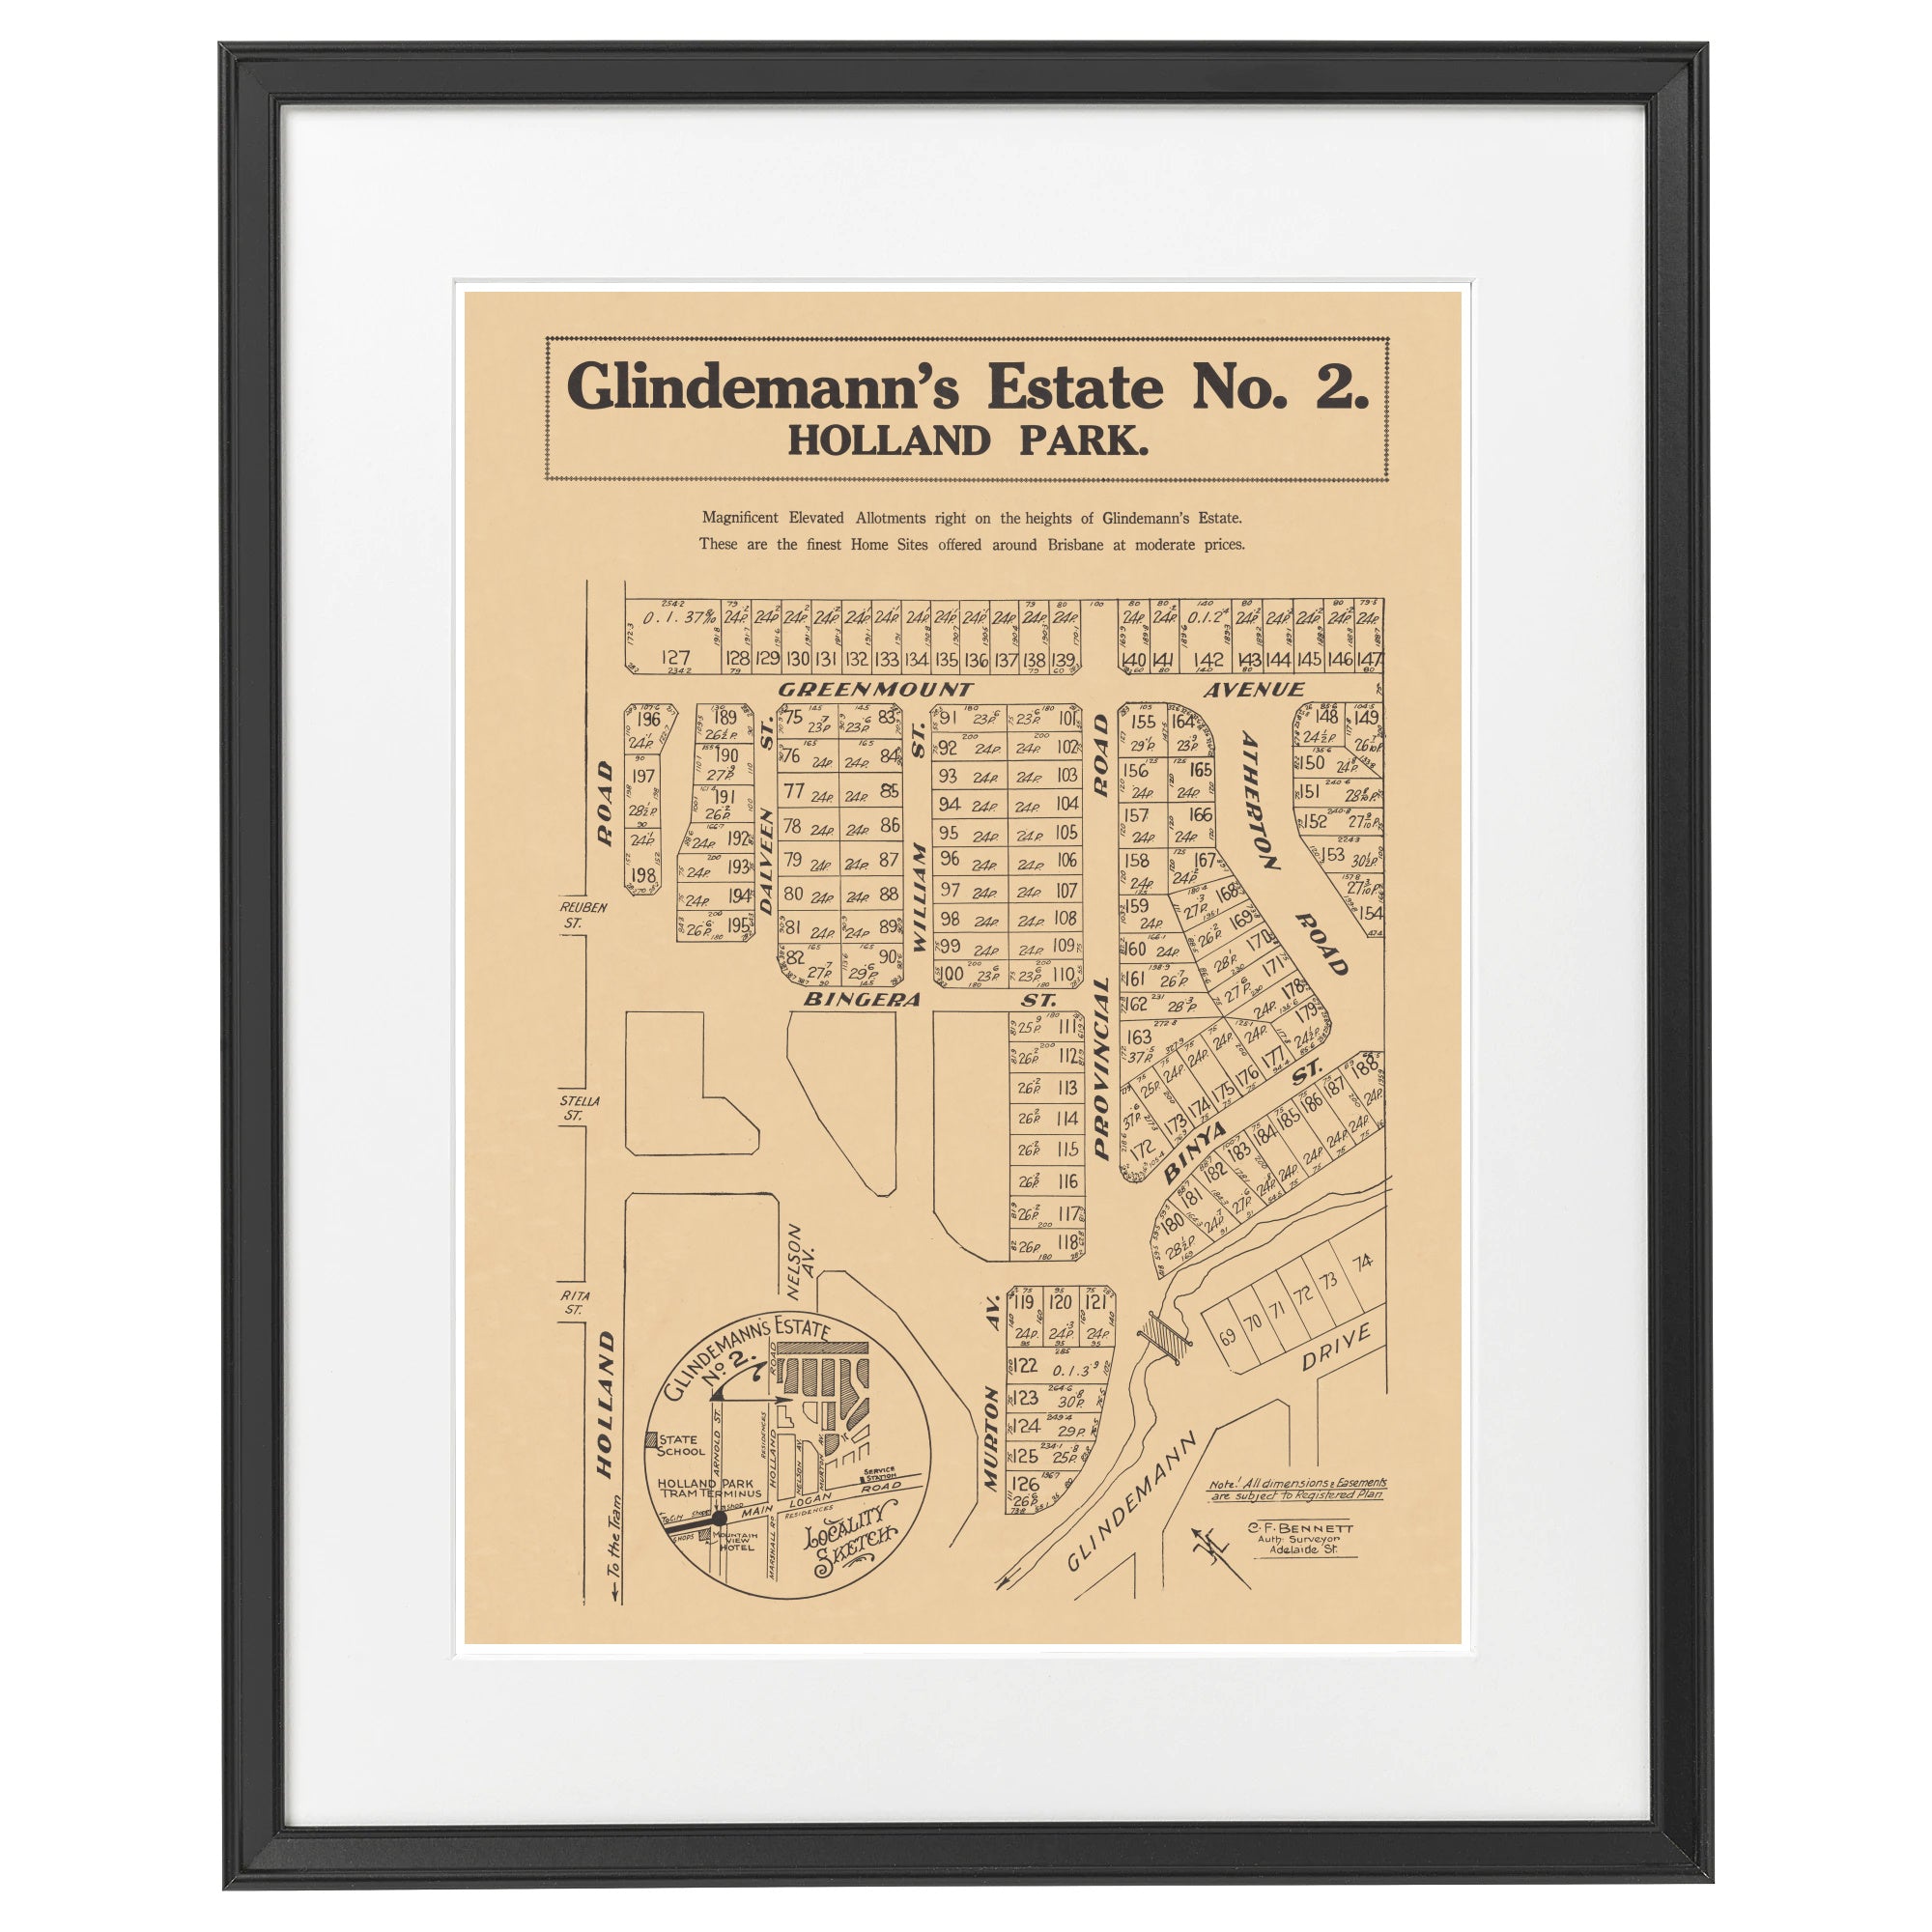 1937 Glindemann's Estate No. 2 - 85 years ago today